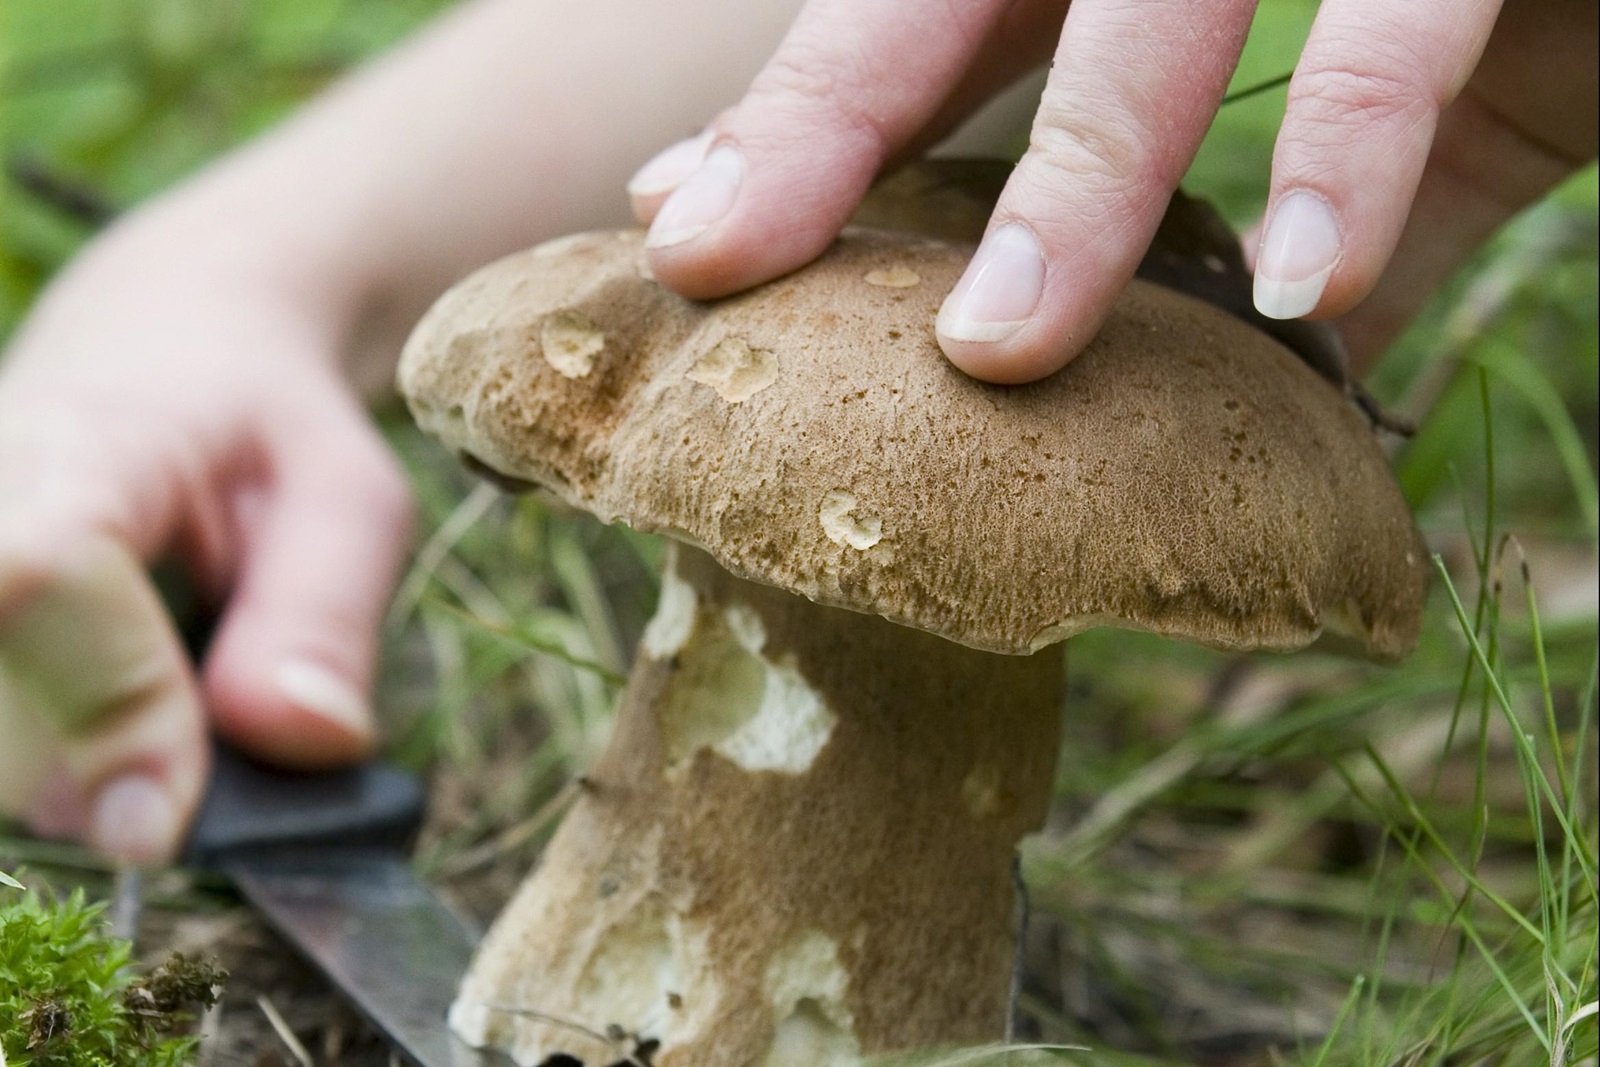 Stagione dei funghi, i consigli degli esperti per non correre rischi